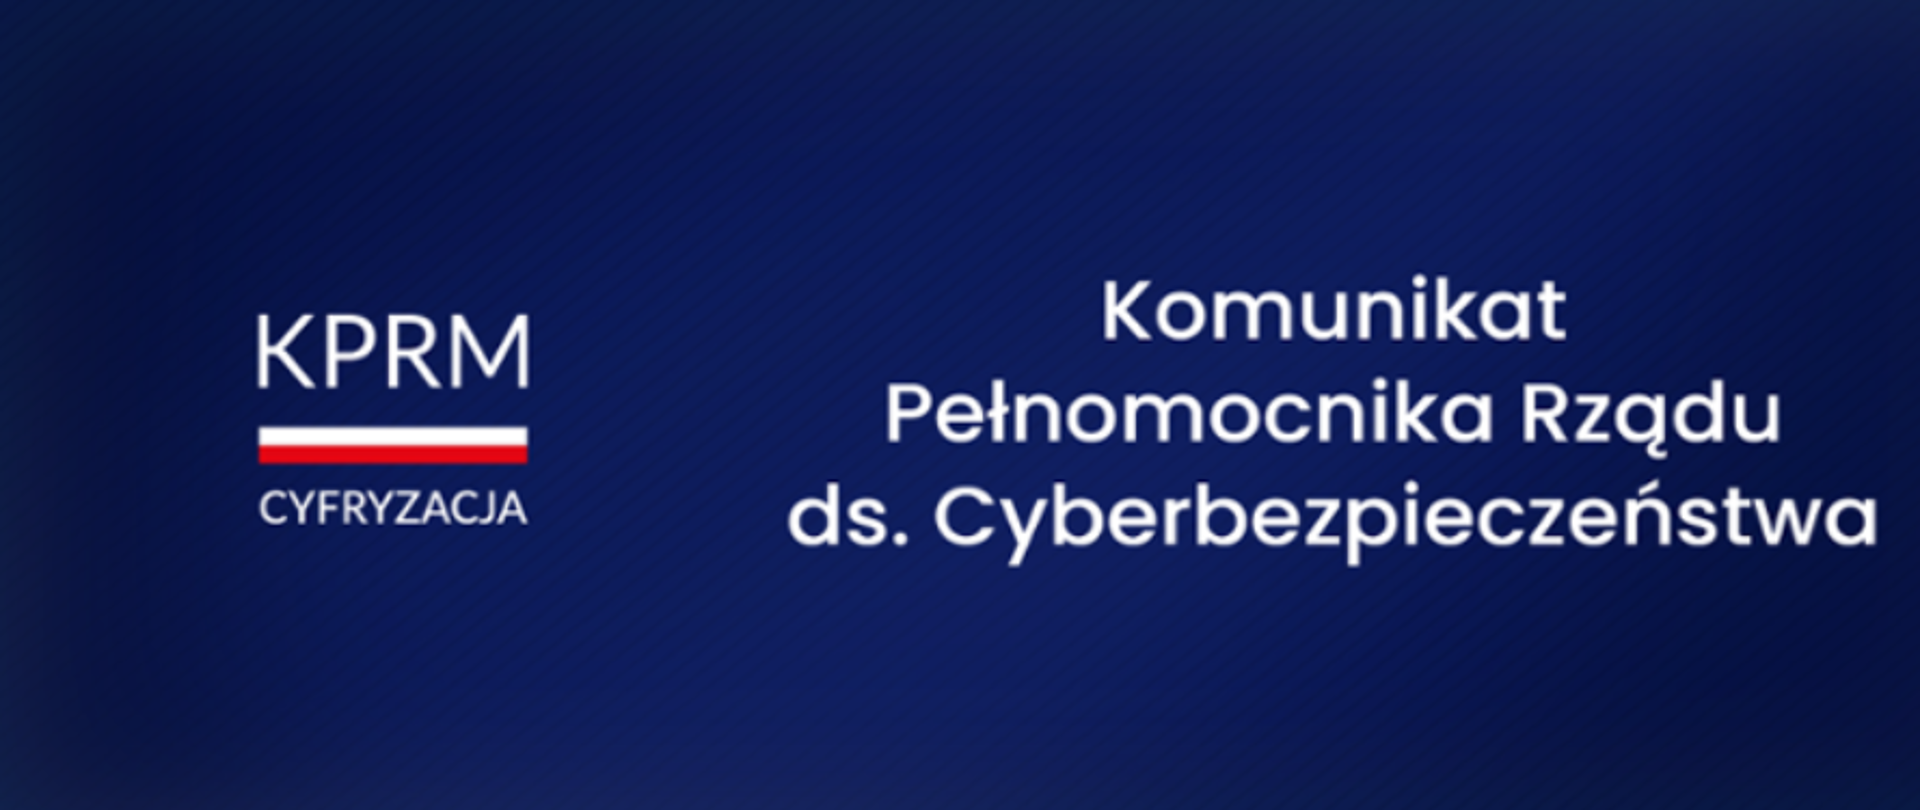 Bialy napis na granatowym tle Komunikat Pełnomocnika rządu ds. cyberbezpieczeństwa